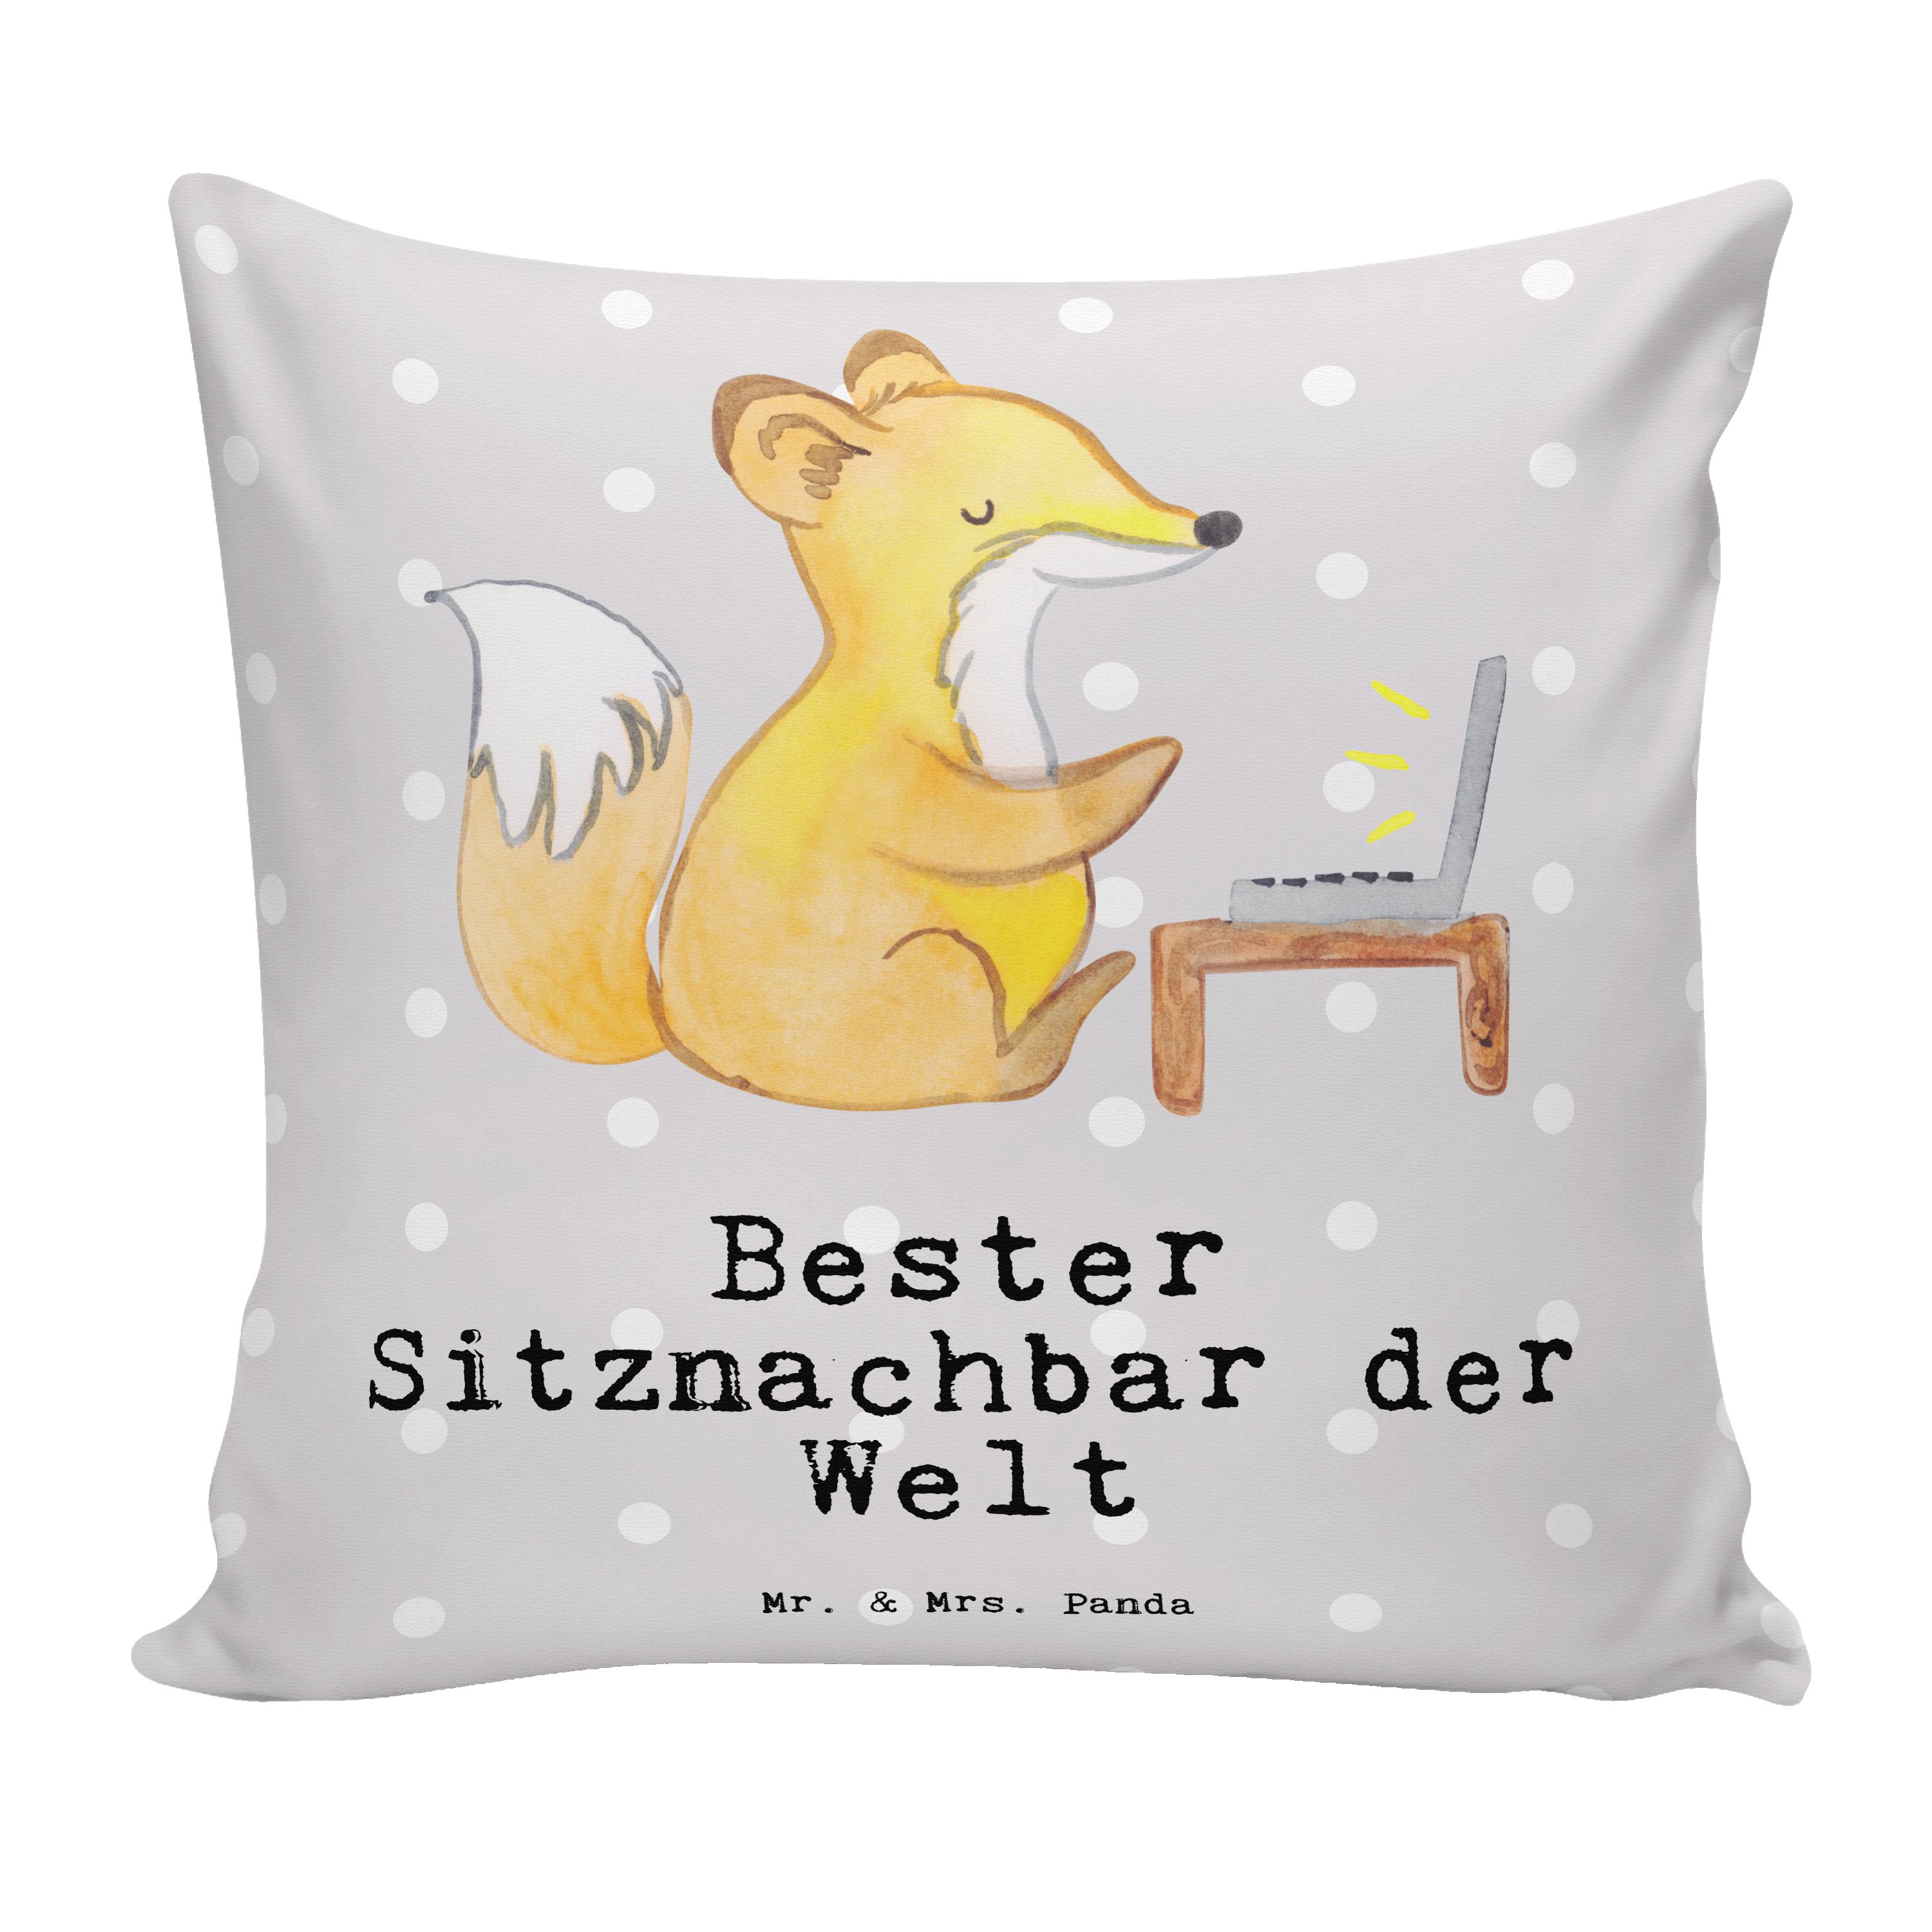 Mr. & Mrs. Panda Dekokissen Fuchs Bester Sitznachbar der Welt - Grau Pastell - Geschenk, Dekokiss